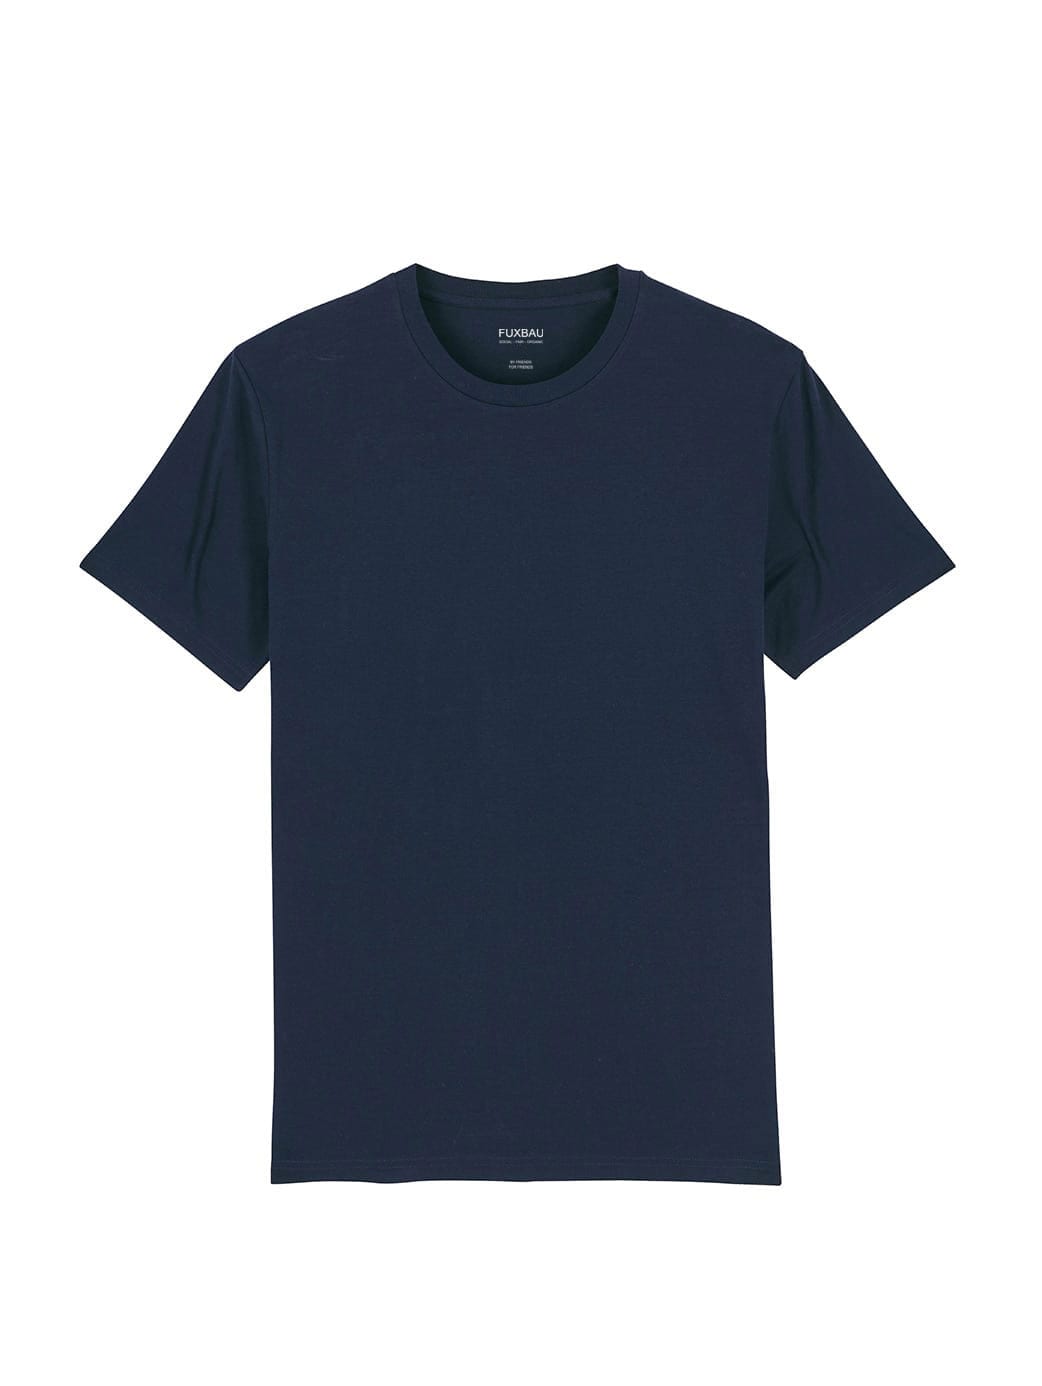 Nachhaltiges Fair Fashion Unisex Standard Basic T-Shirt in navy im von FUXBAU aus 100% GOTS zertifizierter Biobaumwolle.